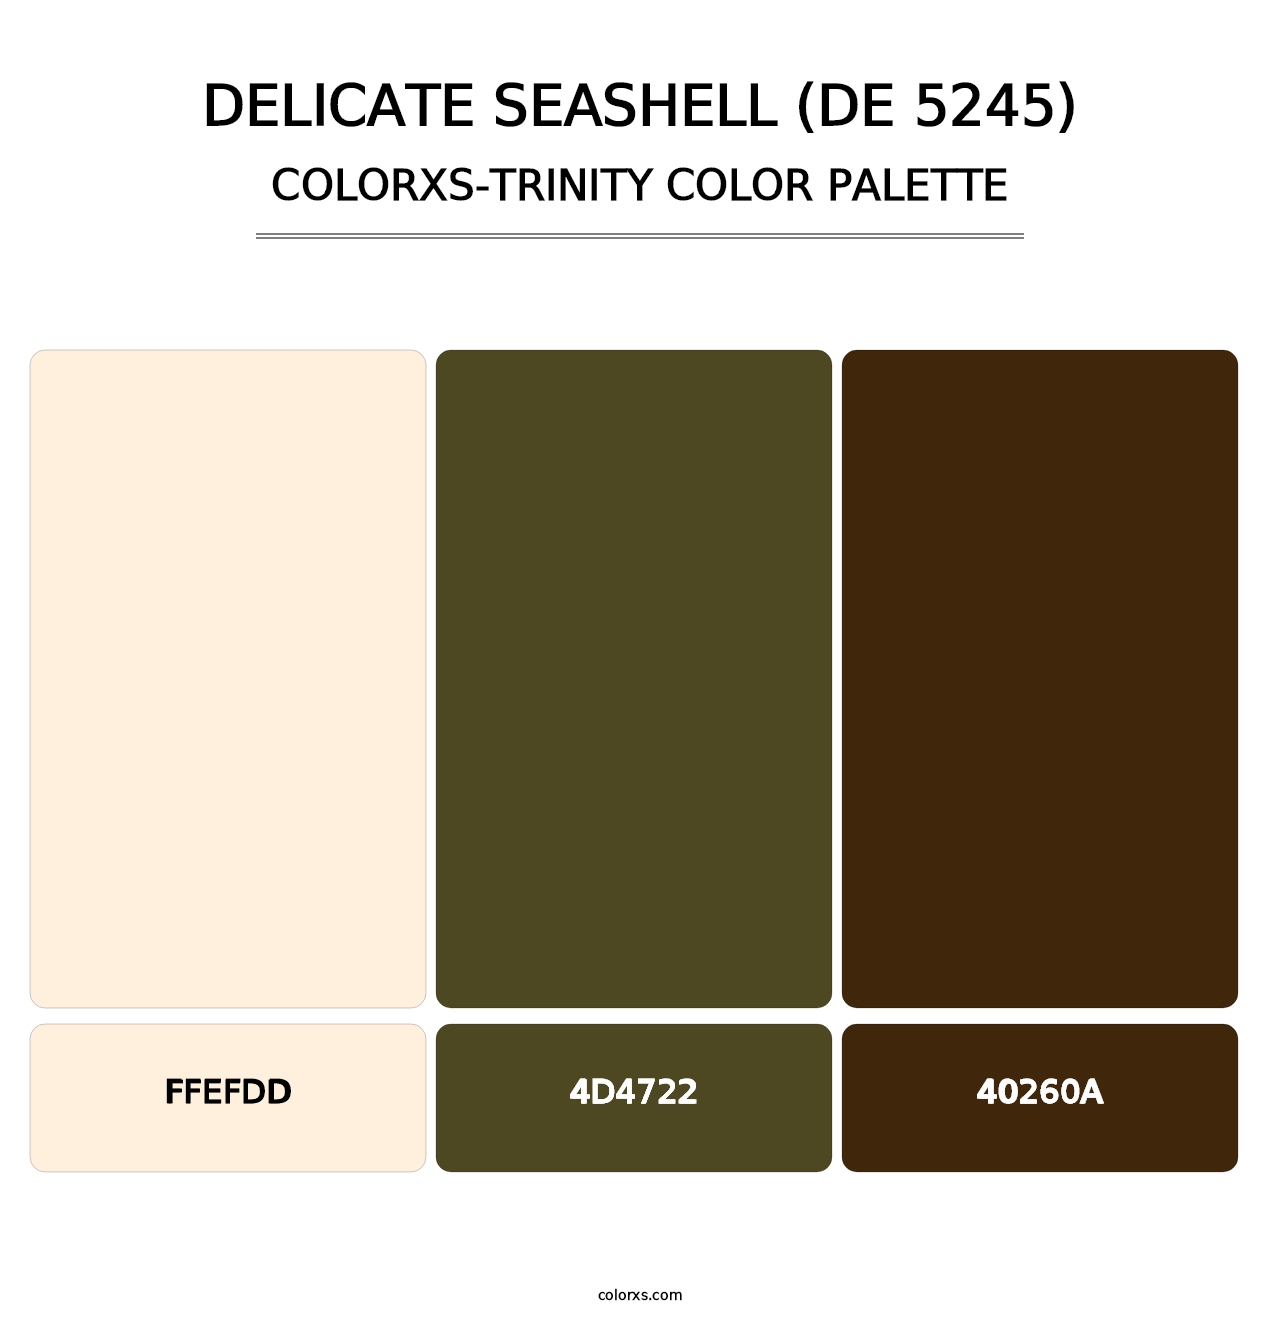 Delicate Seashell (DE 5245) - Colorxs Trinity Palette